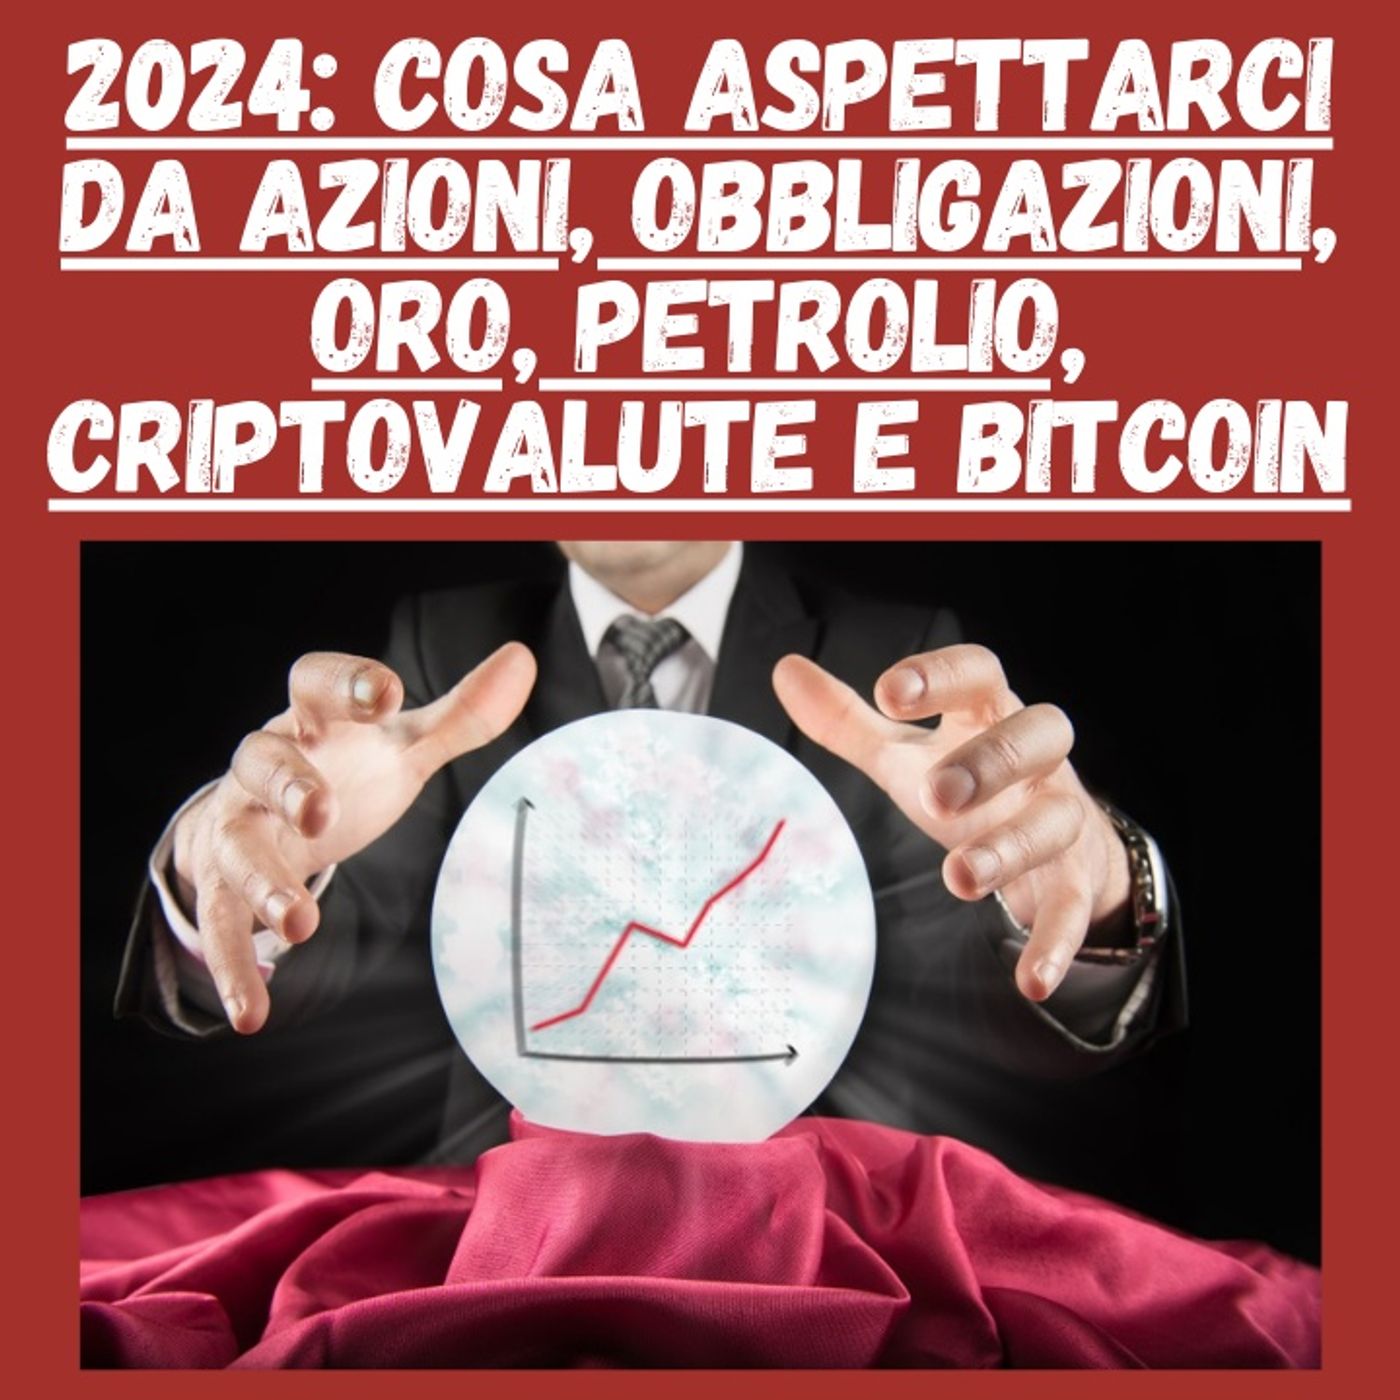 2024: Cosa Aspettarci da azioni, obbligazioni, oro petrolio, criptovalute e bitcoin